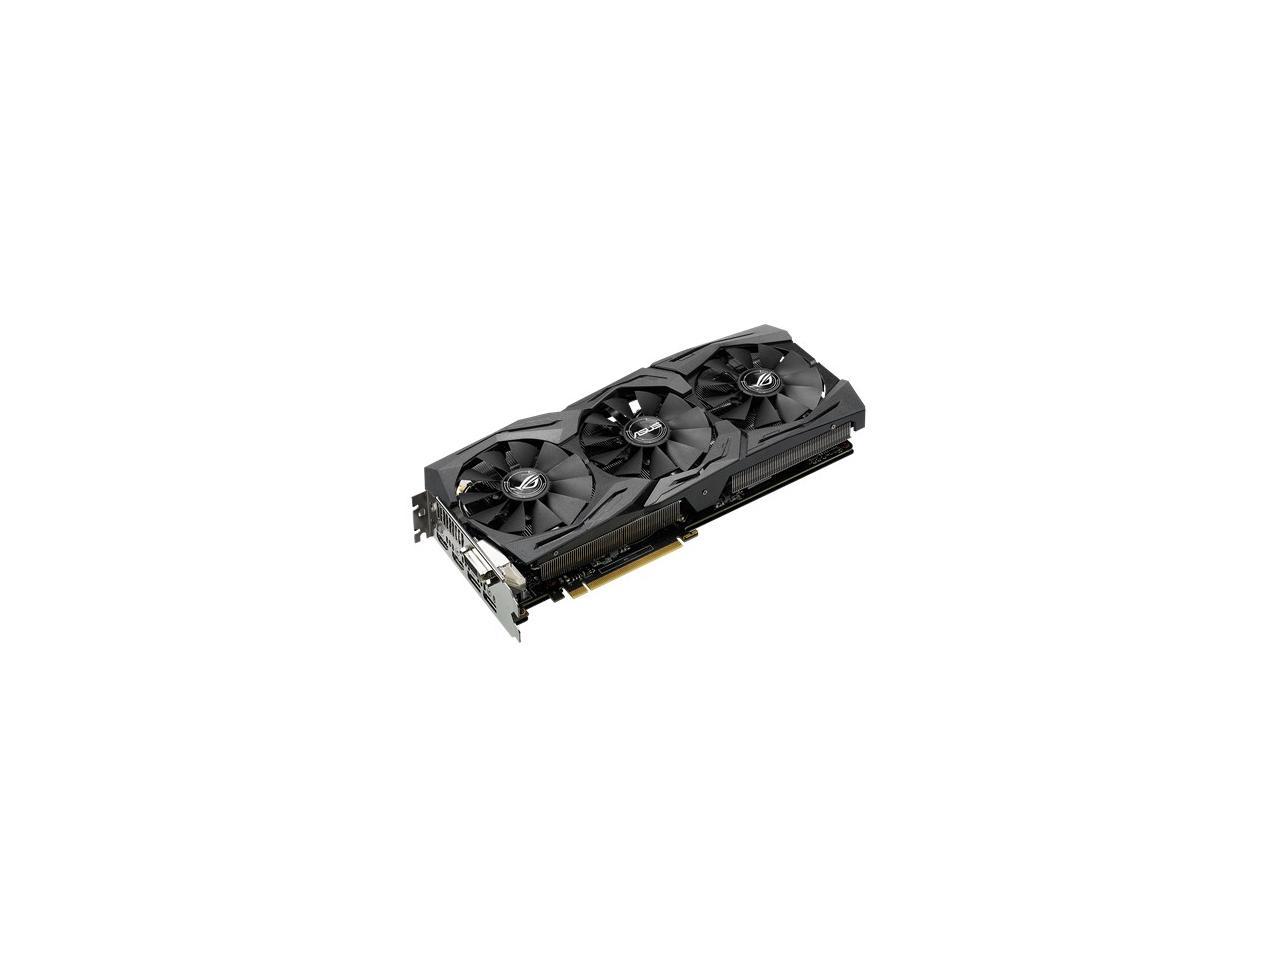 ASUS ROG Strix GeForce GTX 1060 Advanced edition 6GB GDDR5 with Aura Sync RGB Video Card (ROG-STRIX-GTX1060-A6G-GAMING)